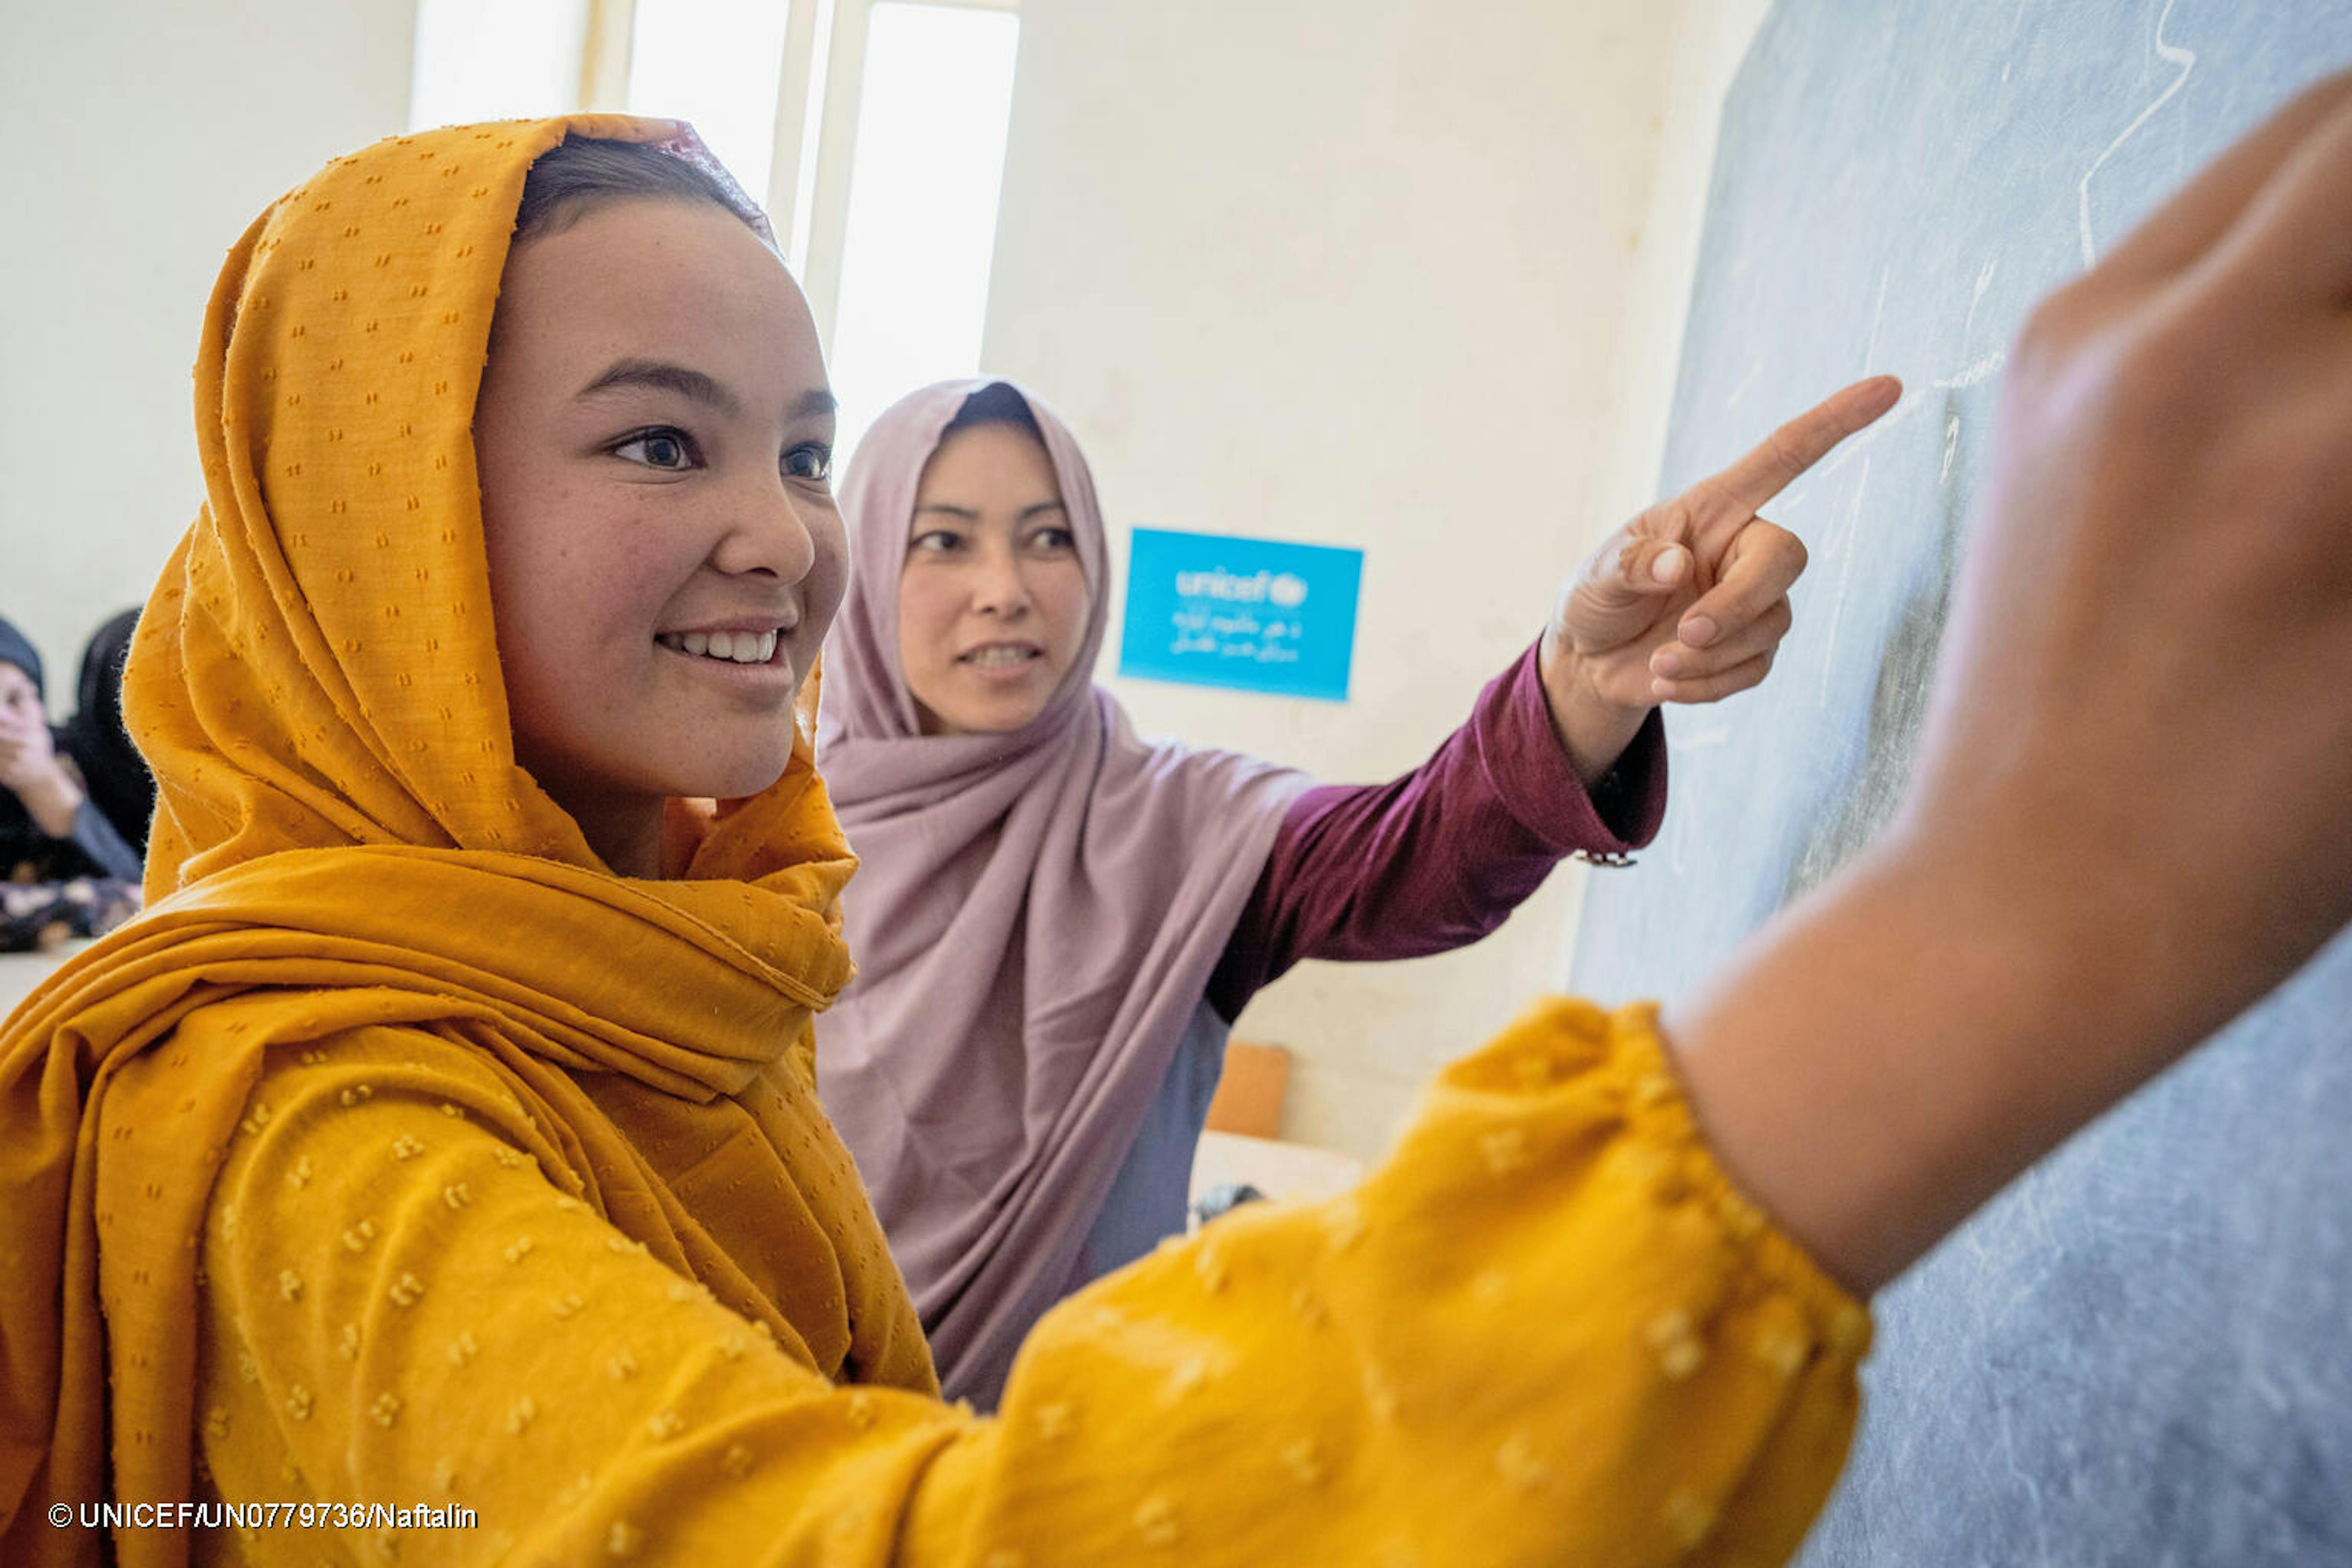 Afghanistan: ragazze con il velo alla lavagna